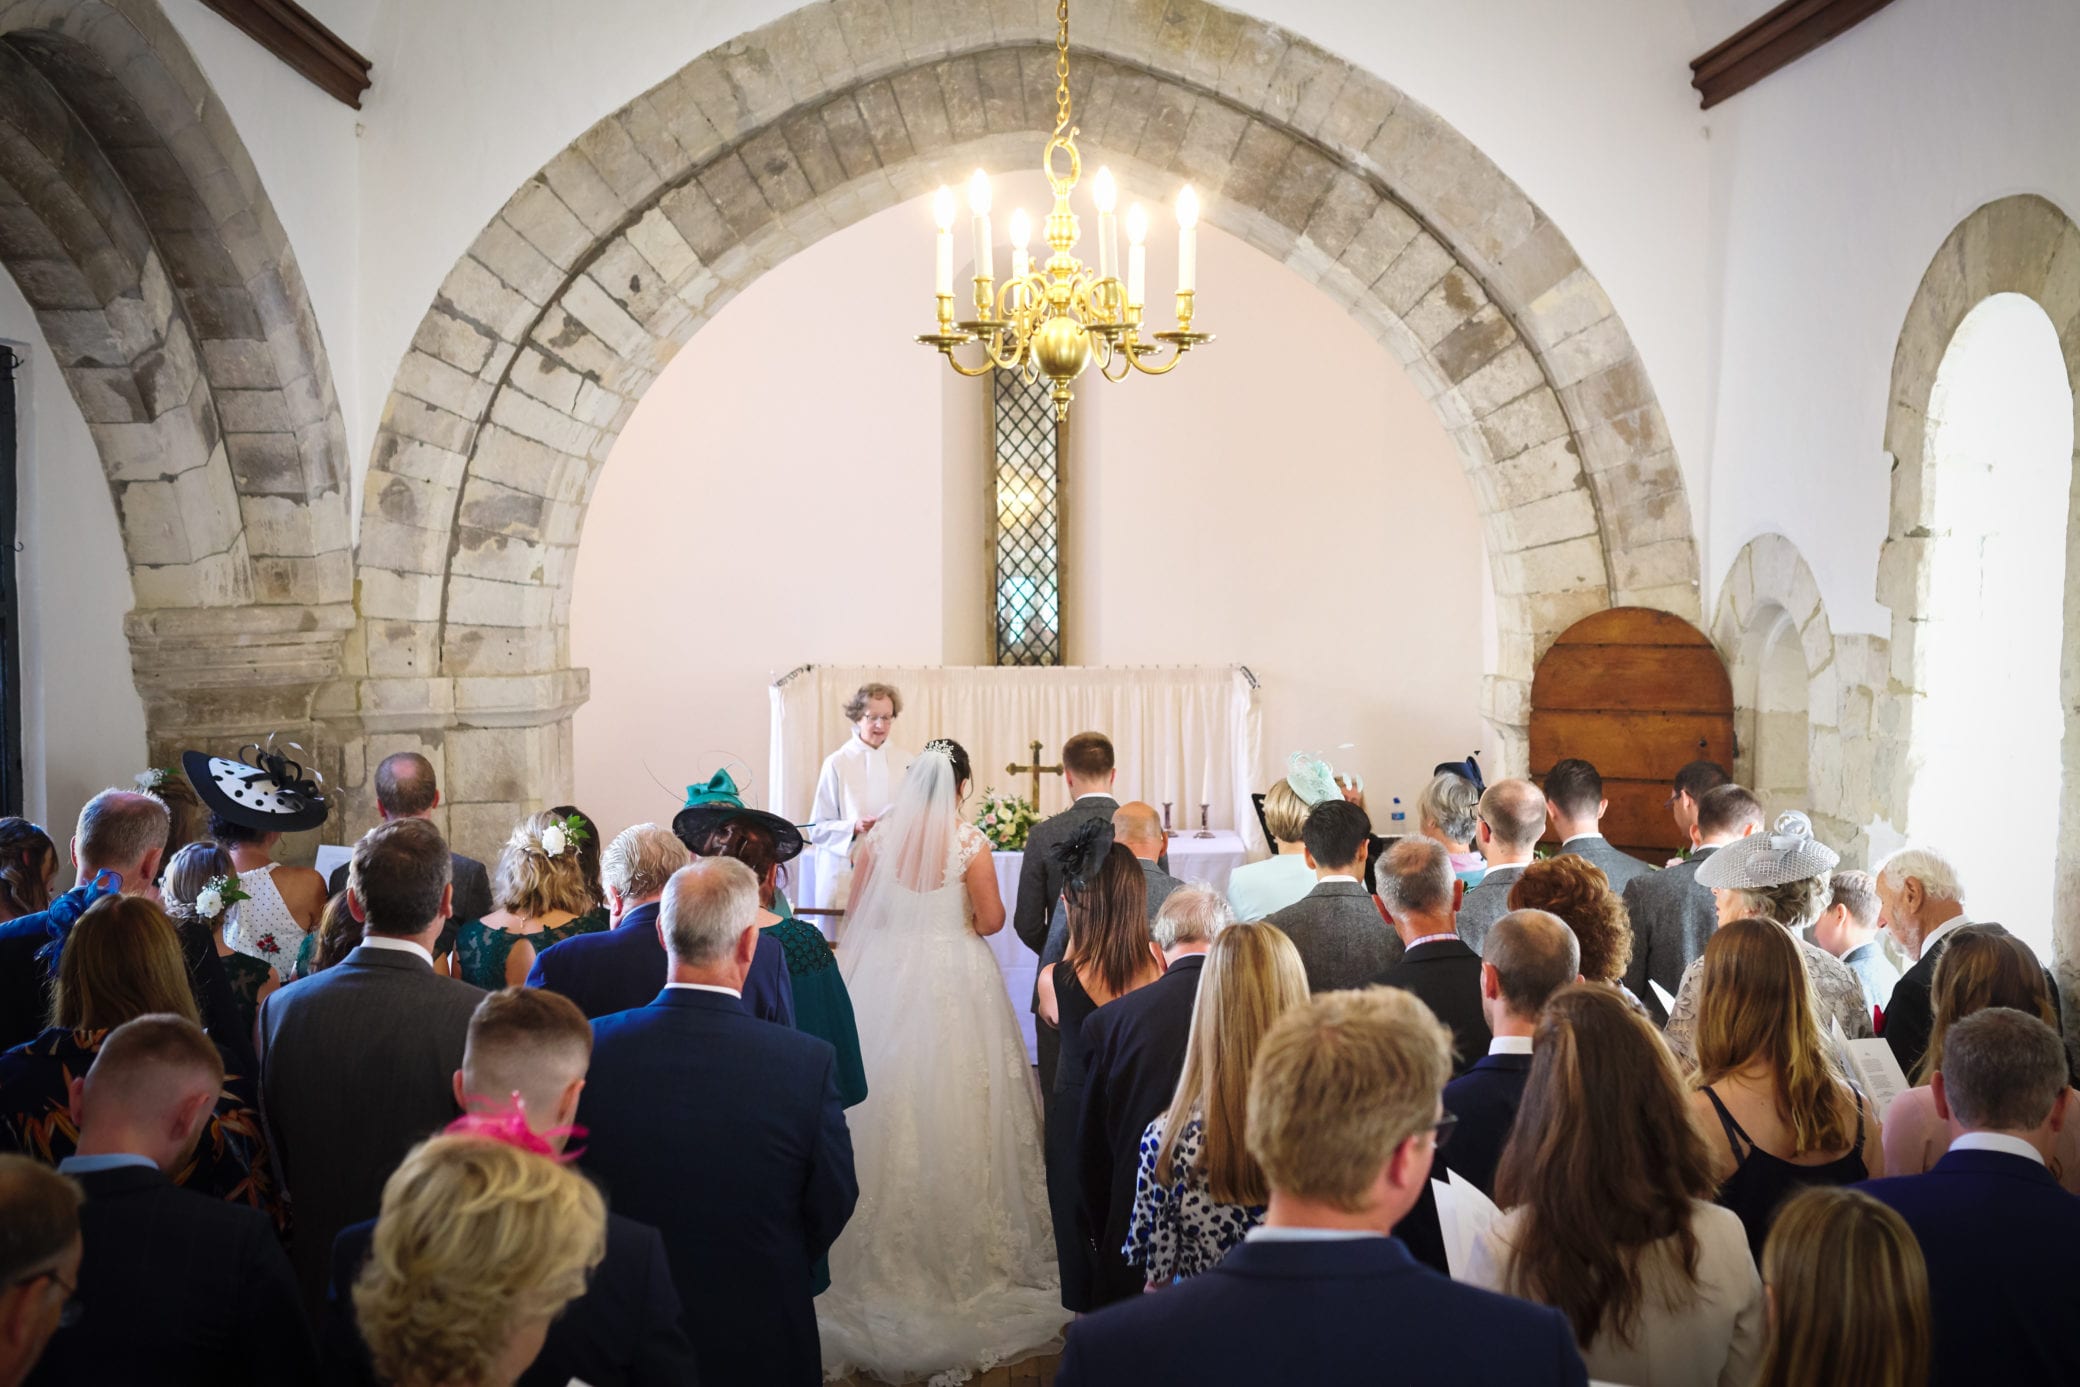 July wedding chapel wedding ceremonies at Farnham Castle in Surrey